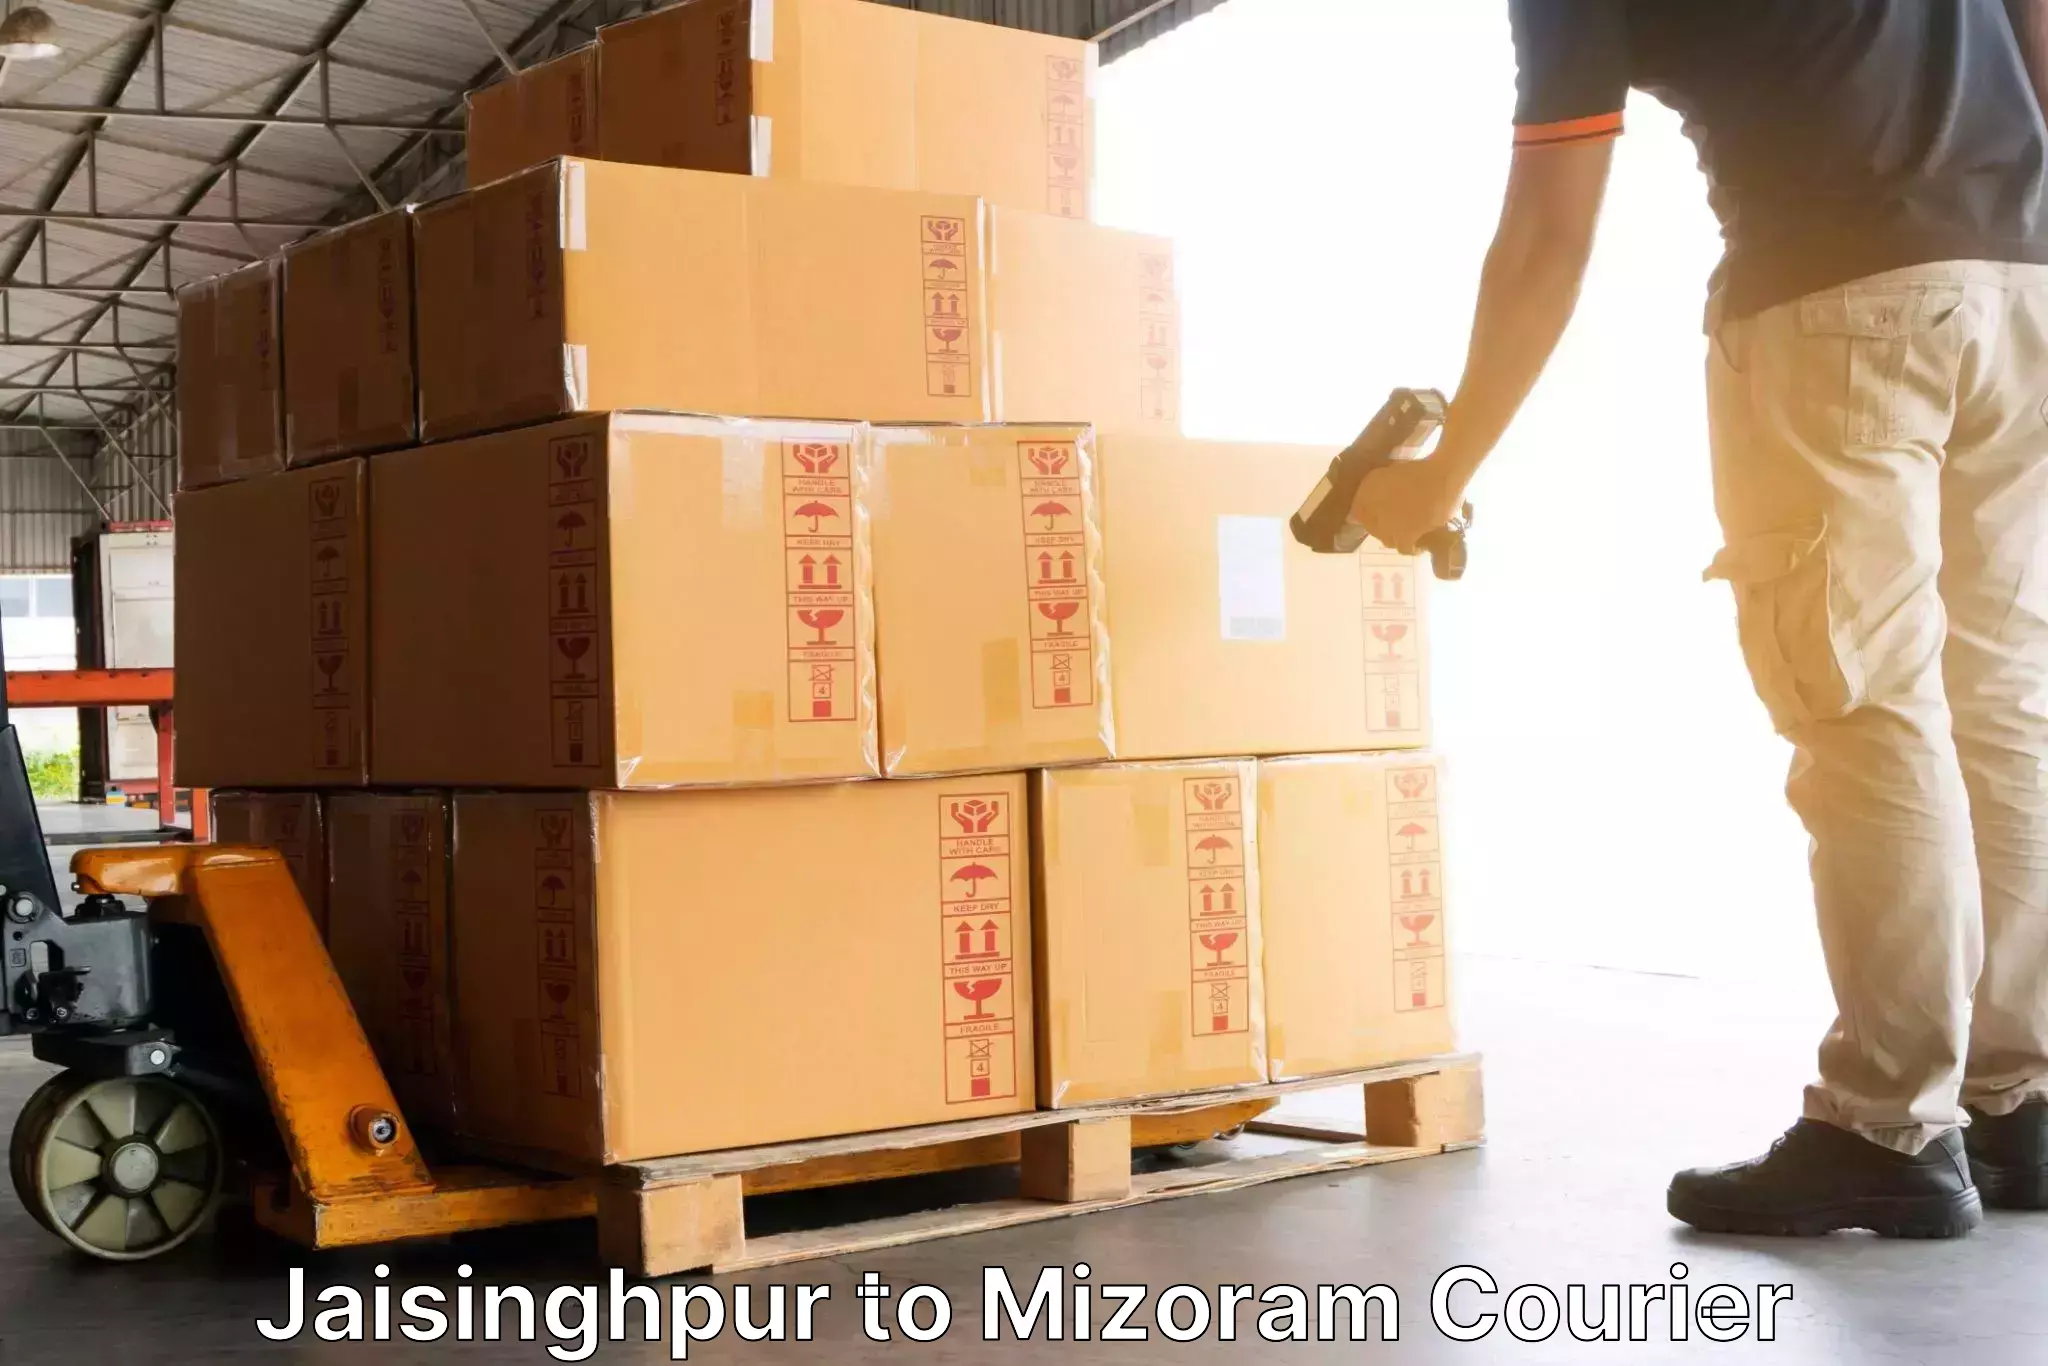 Efficient parcel delivery Jaisinghpur to Lunglei